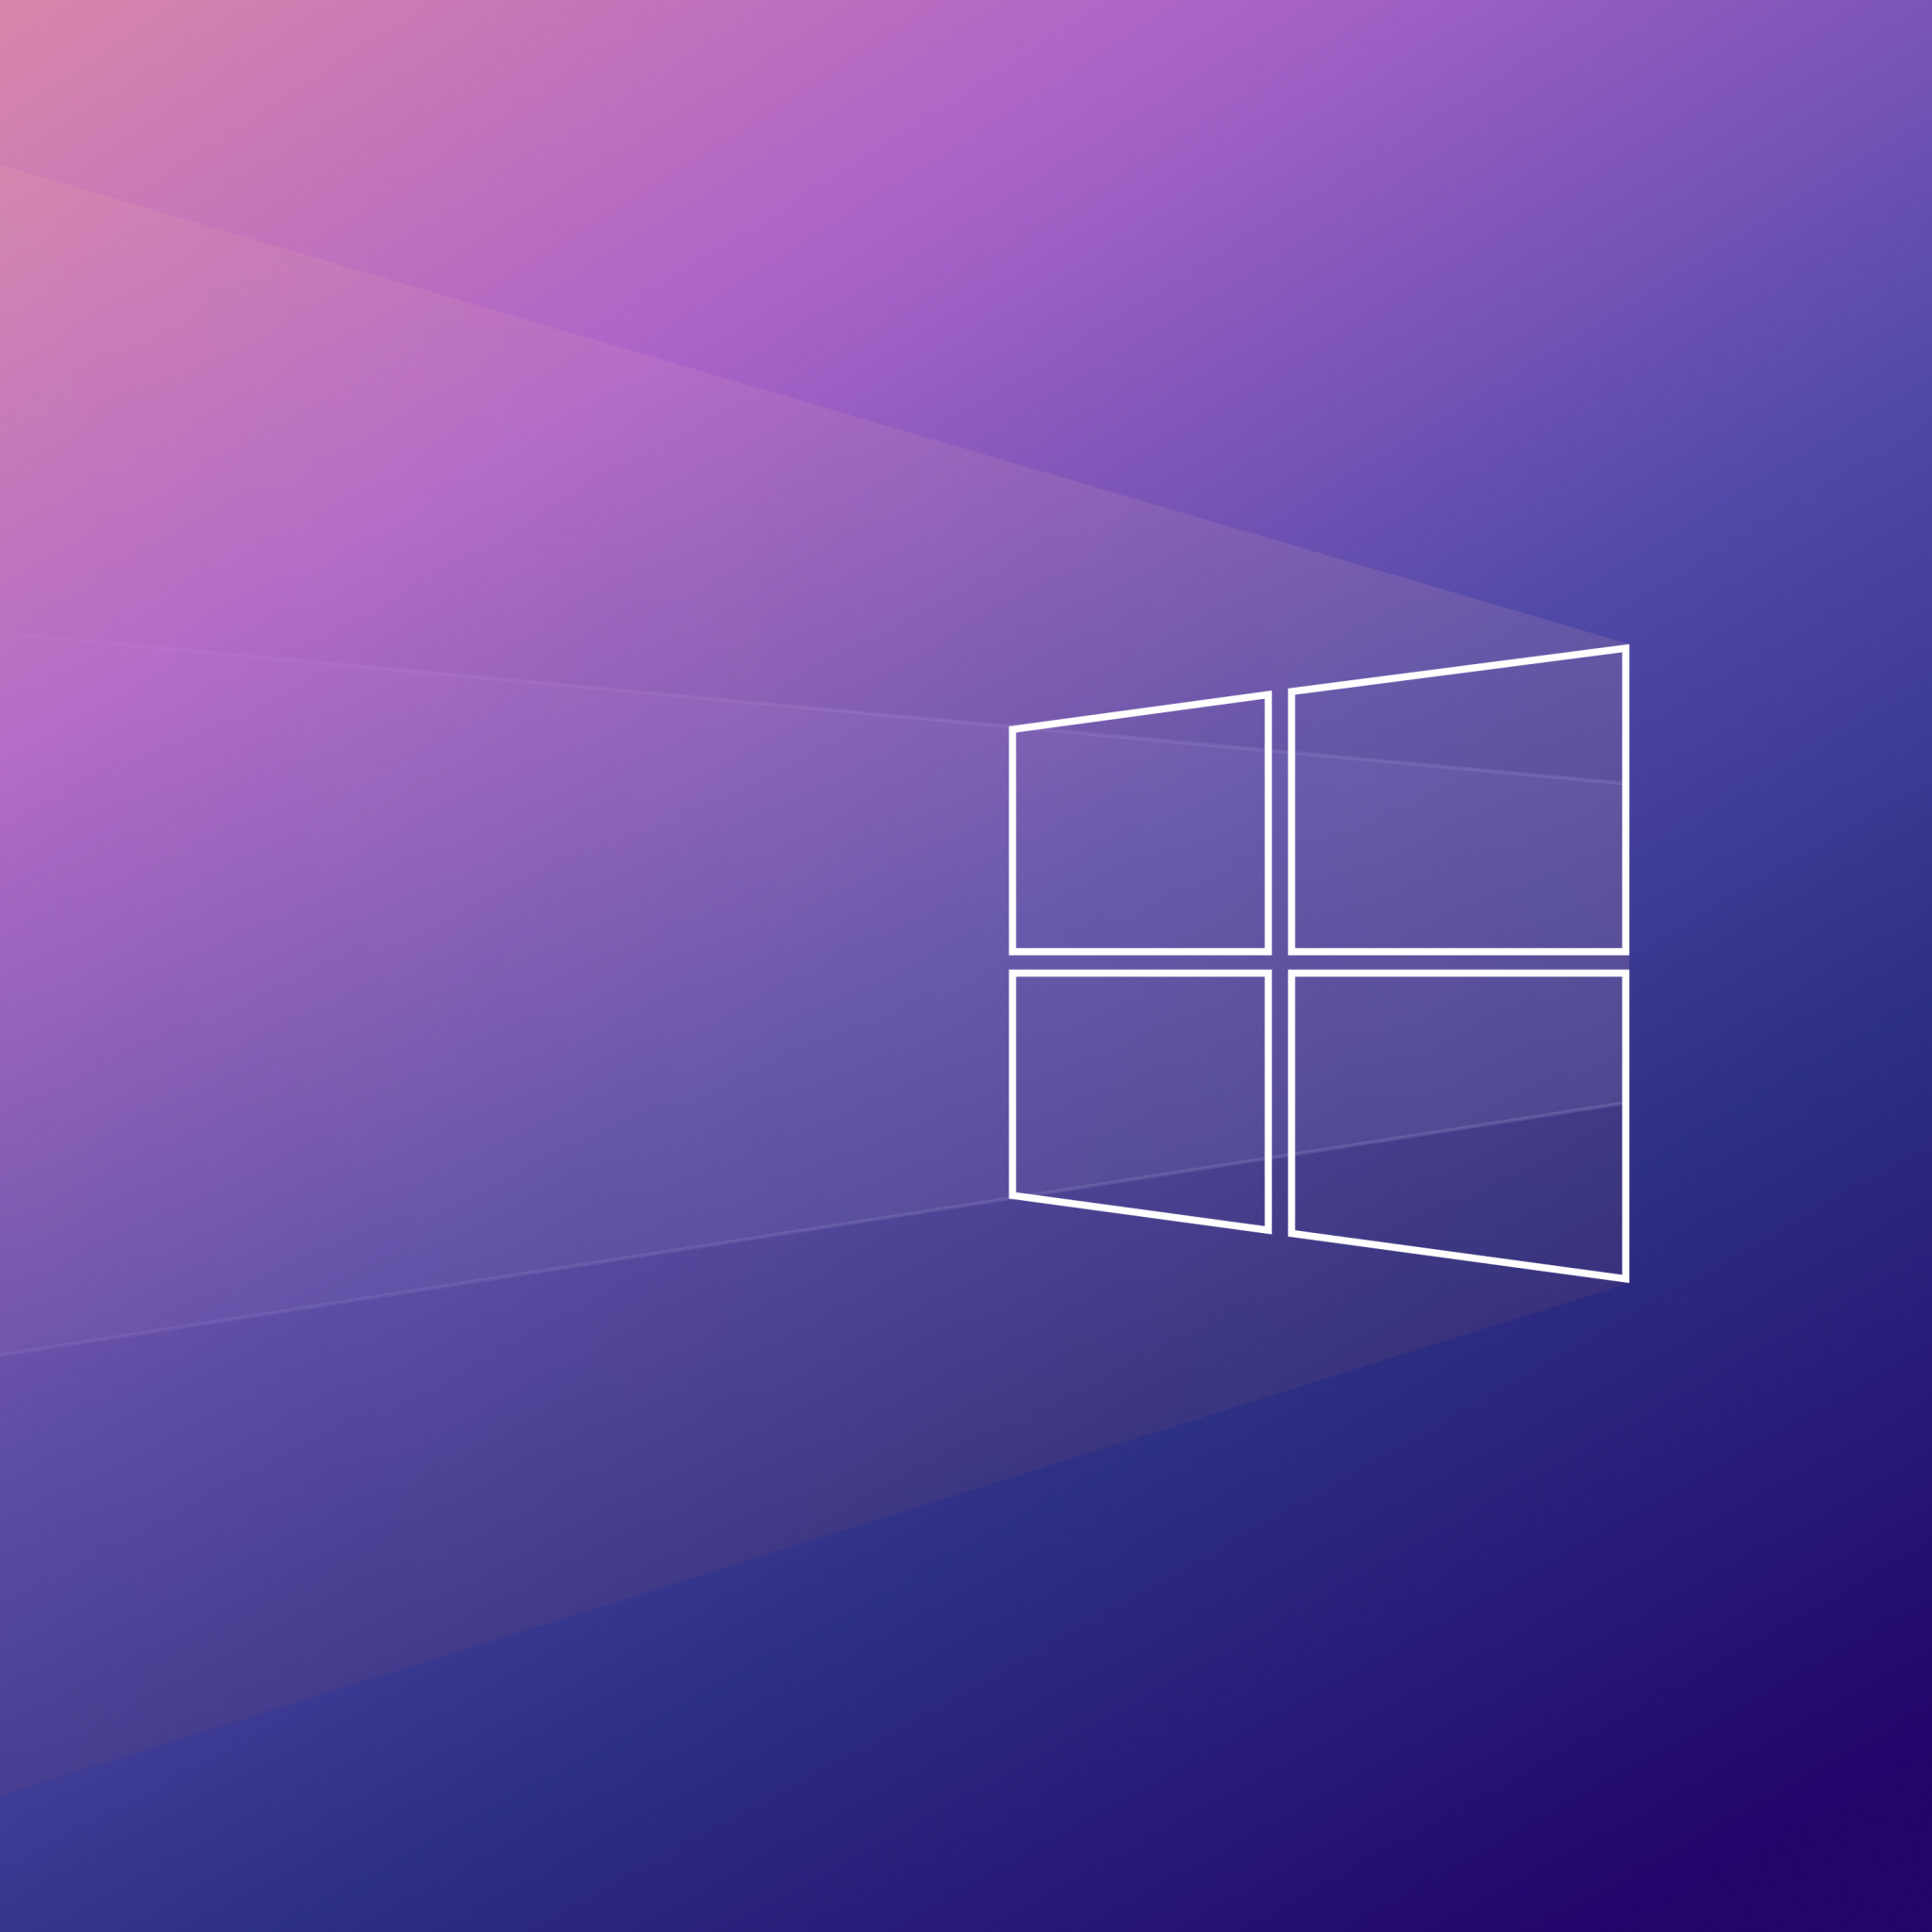 Windows 10 là một trong những hệ điều hành phổ biến nhất hiện nay, và việc sử dụng hình nền tuyệt đẹp trên nó sẽ làm cho máy tính của bạn trở nên đẹp và tinh tế hơn. Hãy xem hình ảnh để lựa chọn cho mình một hình nền Windows 10 ưng ý nhất.